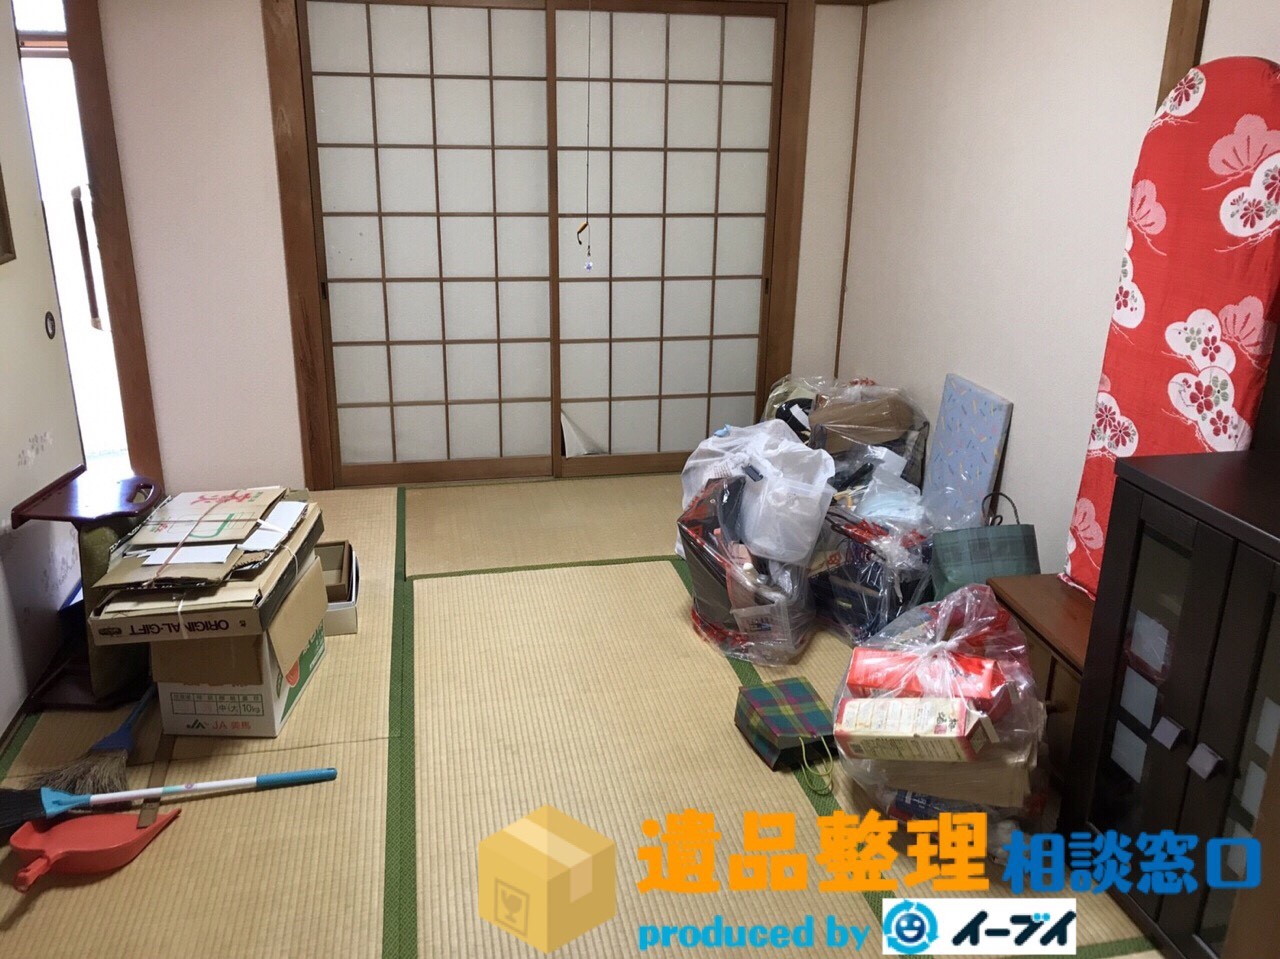 大阪府箕面市で遺品整理に伴い和室を中心に片付けさせていただきました。のアイキャッチ